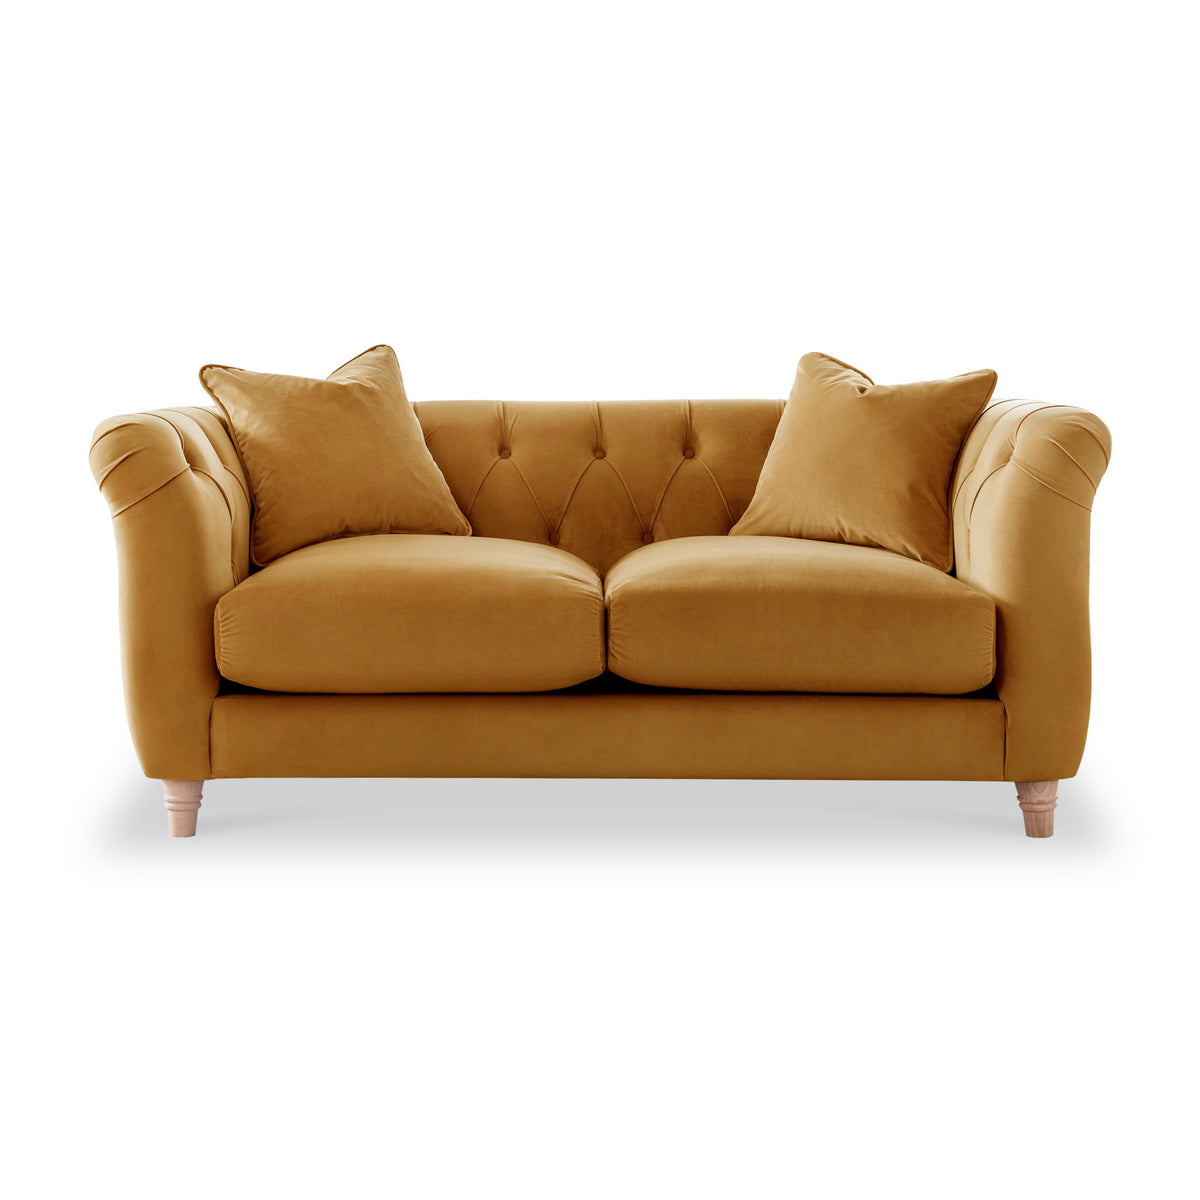 Clarence Ochre Velvet Chesterfield 2 Seater Sofa from Roseland Furniture